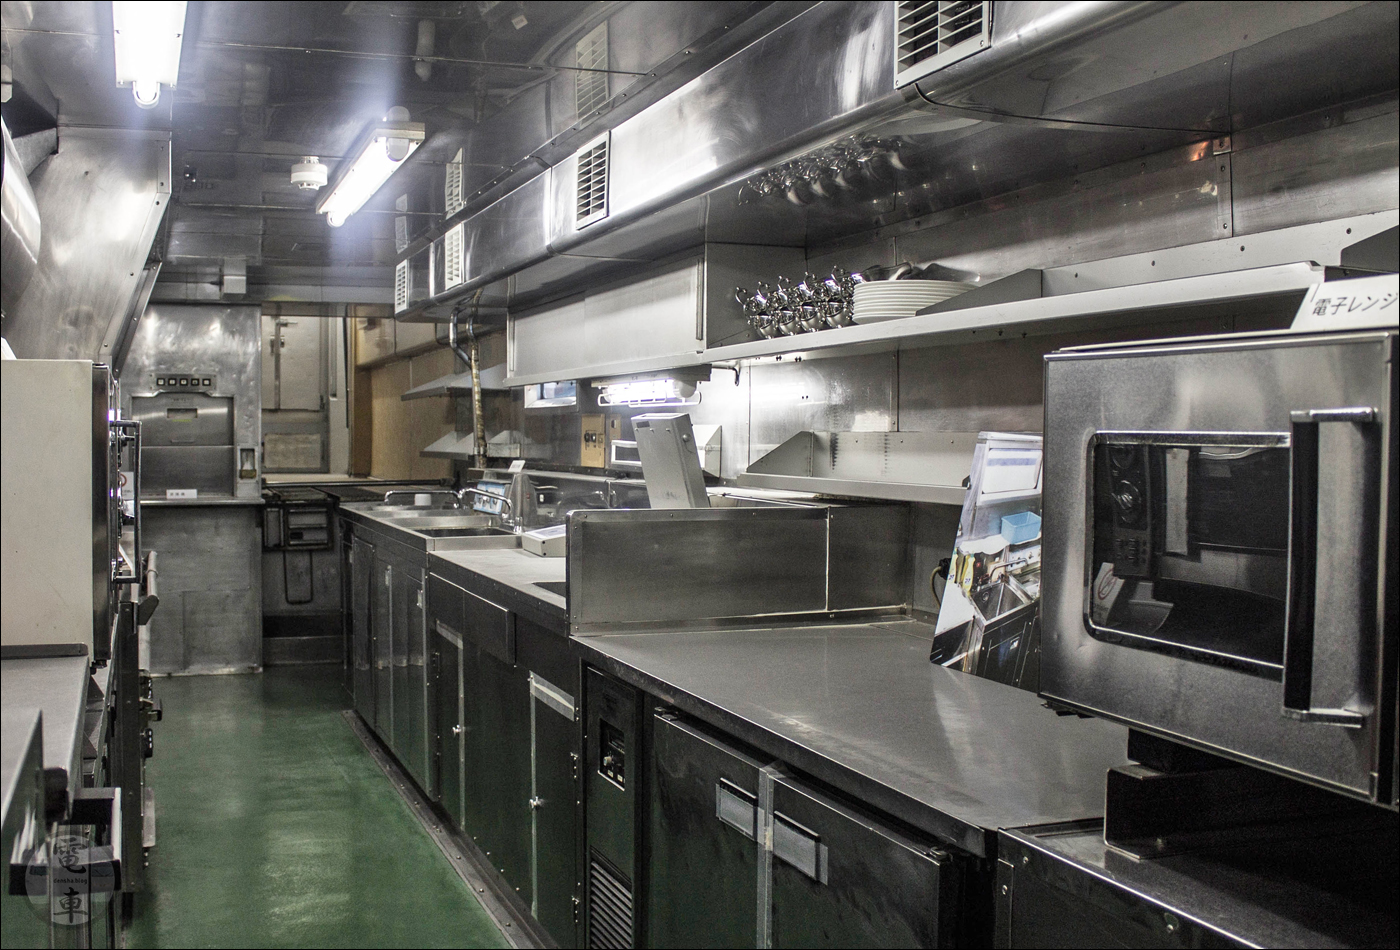 A kétszintes kocsi alsó részén, az étkező alatt kapott helyet a konyha, mely akár egy kisebb étteremnek is a becsületére válna.